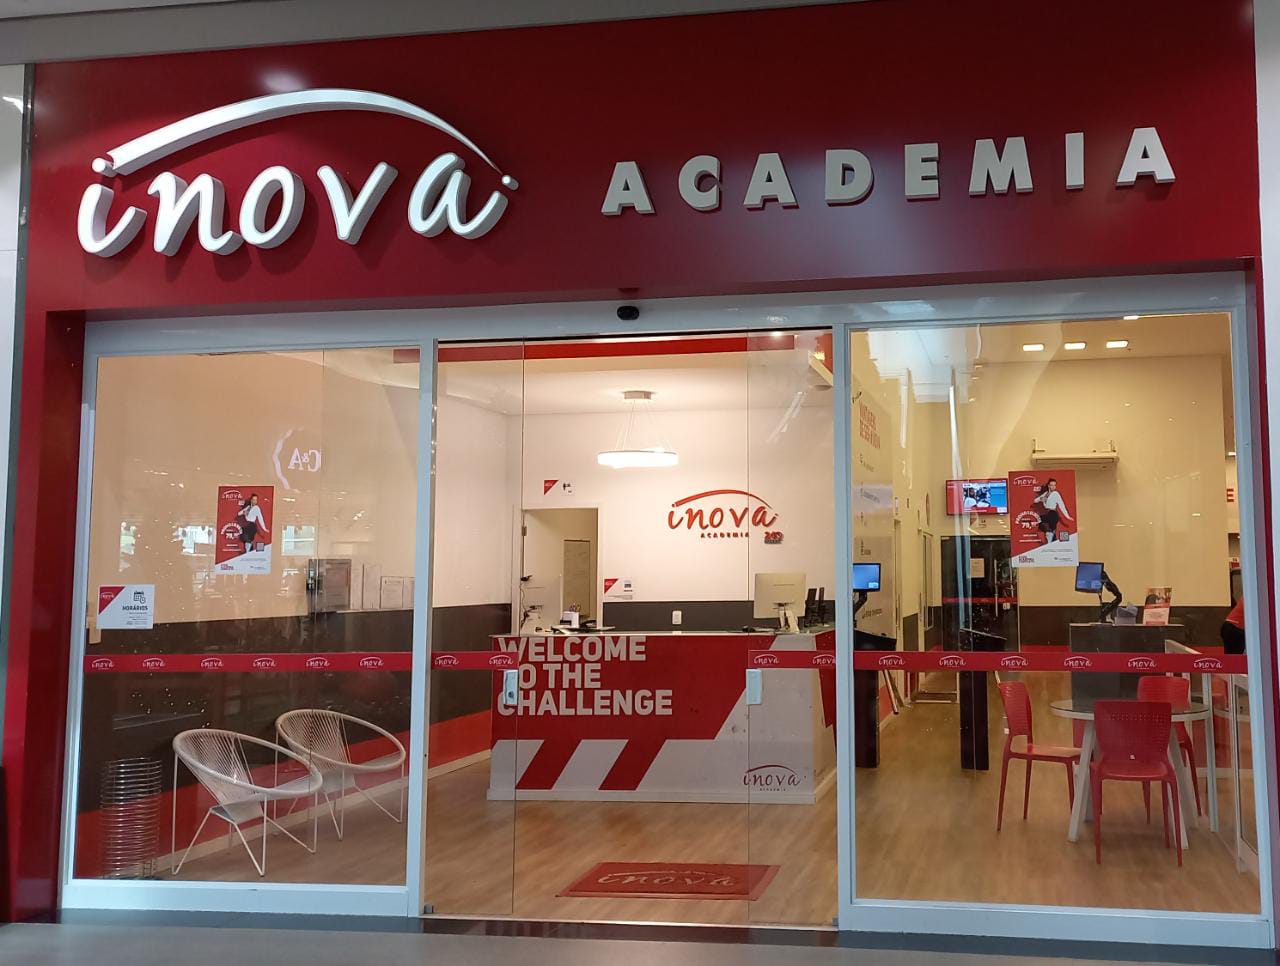 Academia Inova contrata estagiário e professores em Bragança